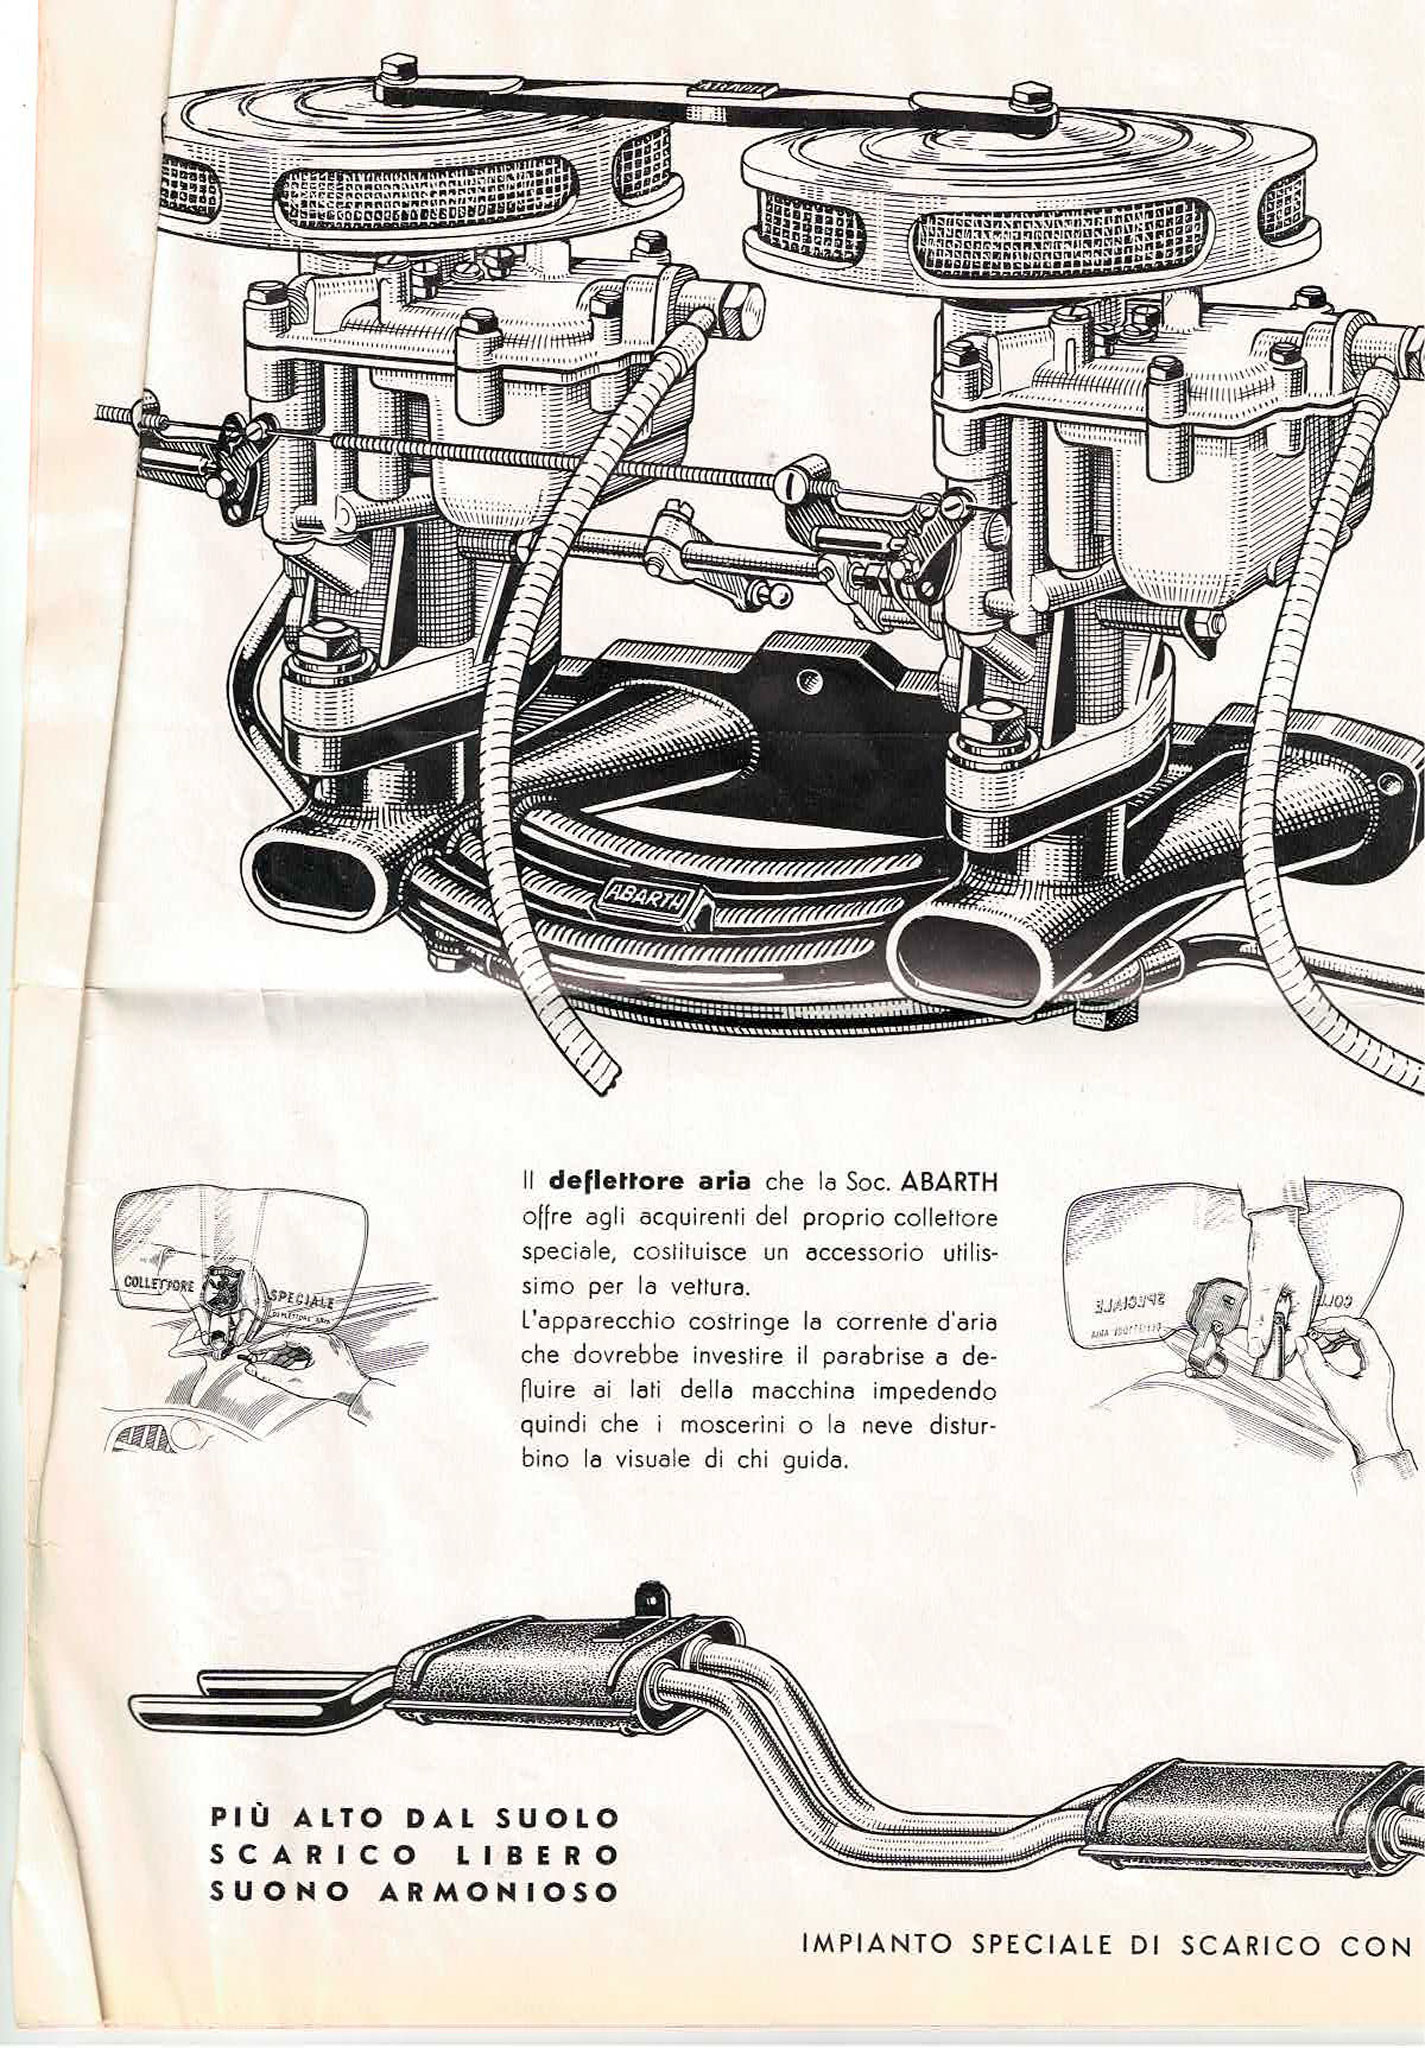 1951 Alfa Romeo 1900 Abarth schéma du montage du double carburateur Weber.